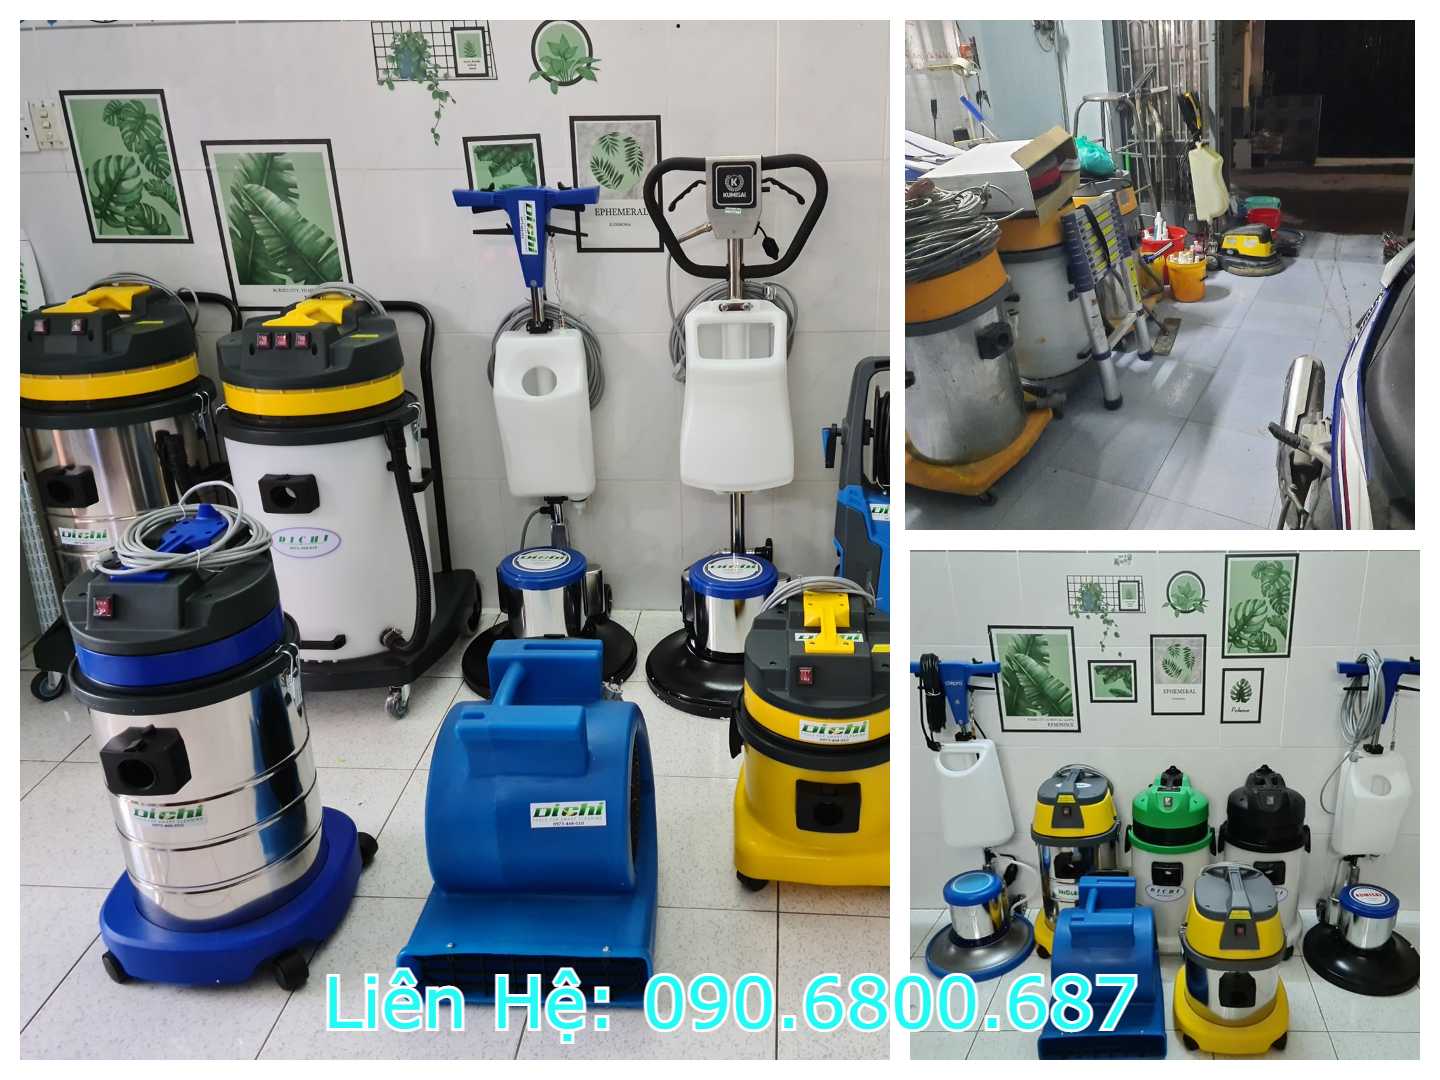 Trong dịch vụ vệ sinh công nghiệp quận Tân Phú đầy đủ thiết hiện đại